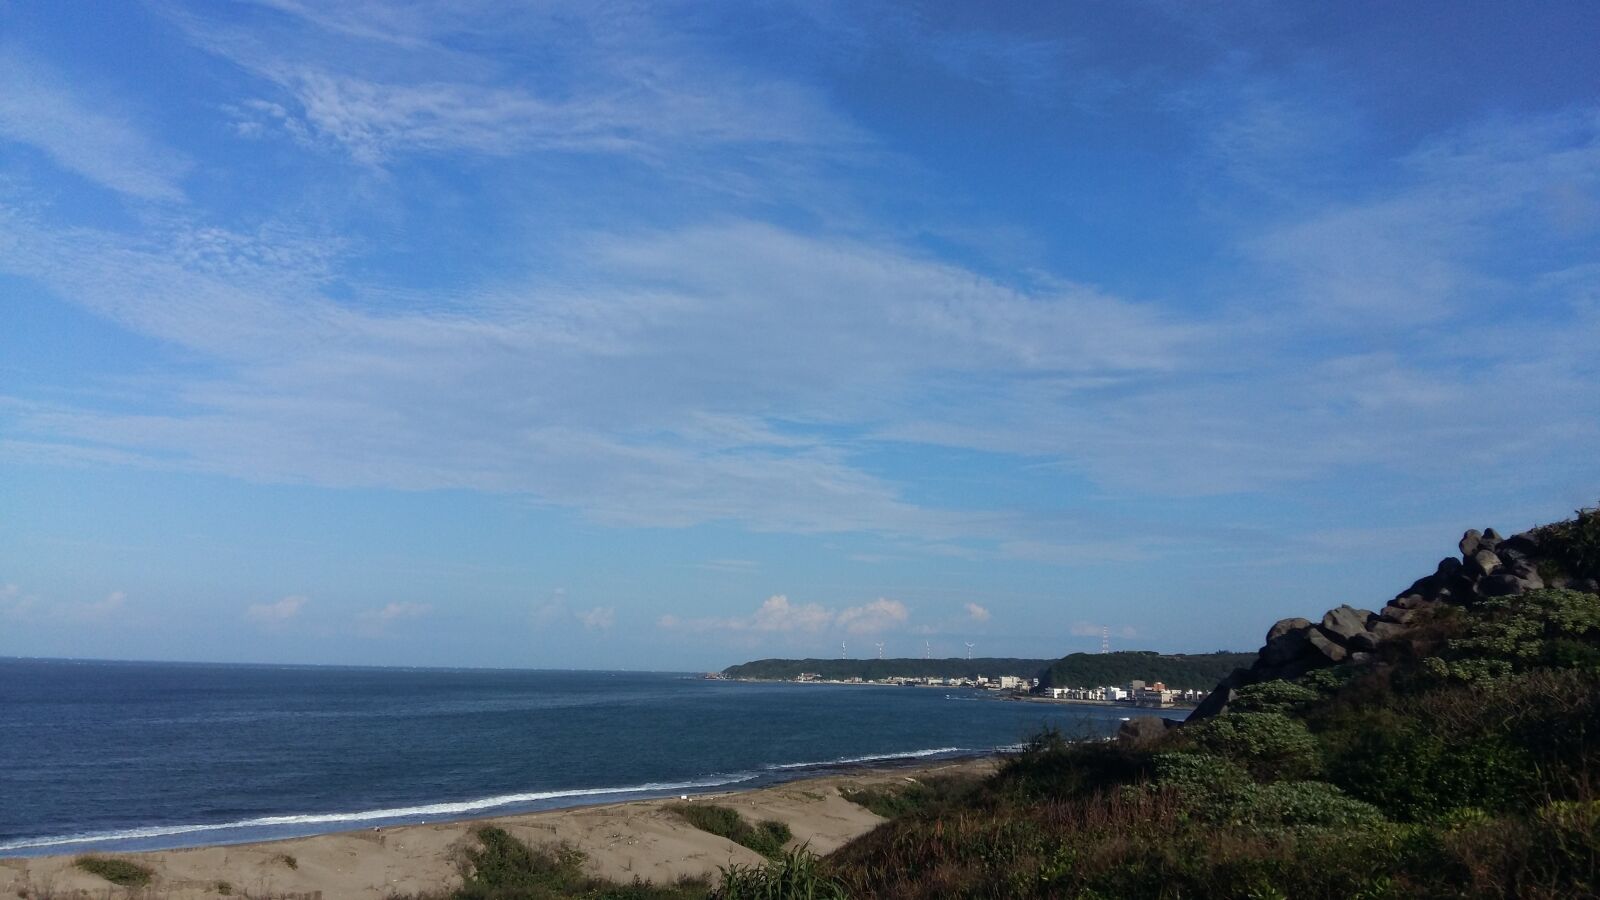 Samsung Galaxy A7 sample photo. Sky, beach, ocean photography